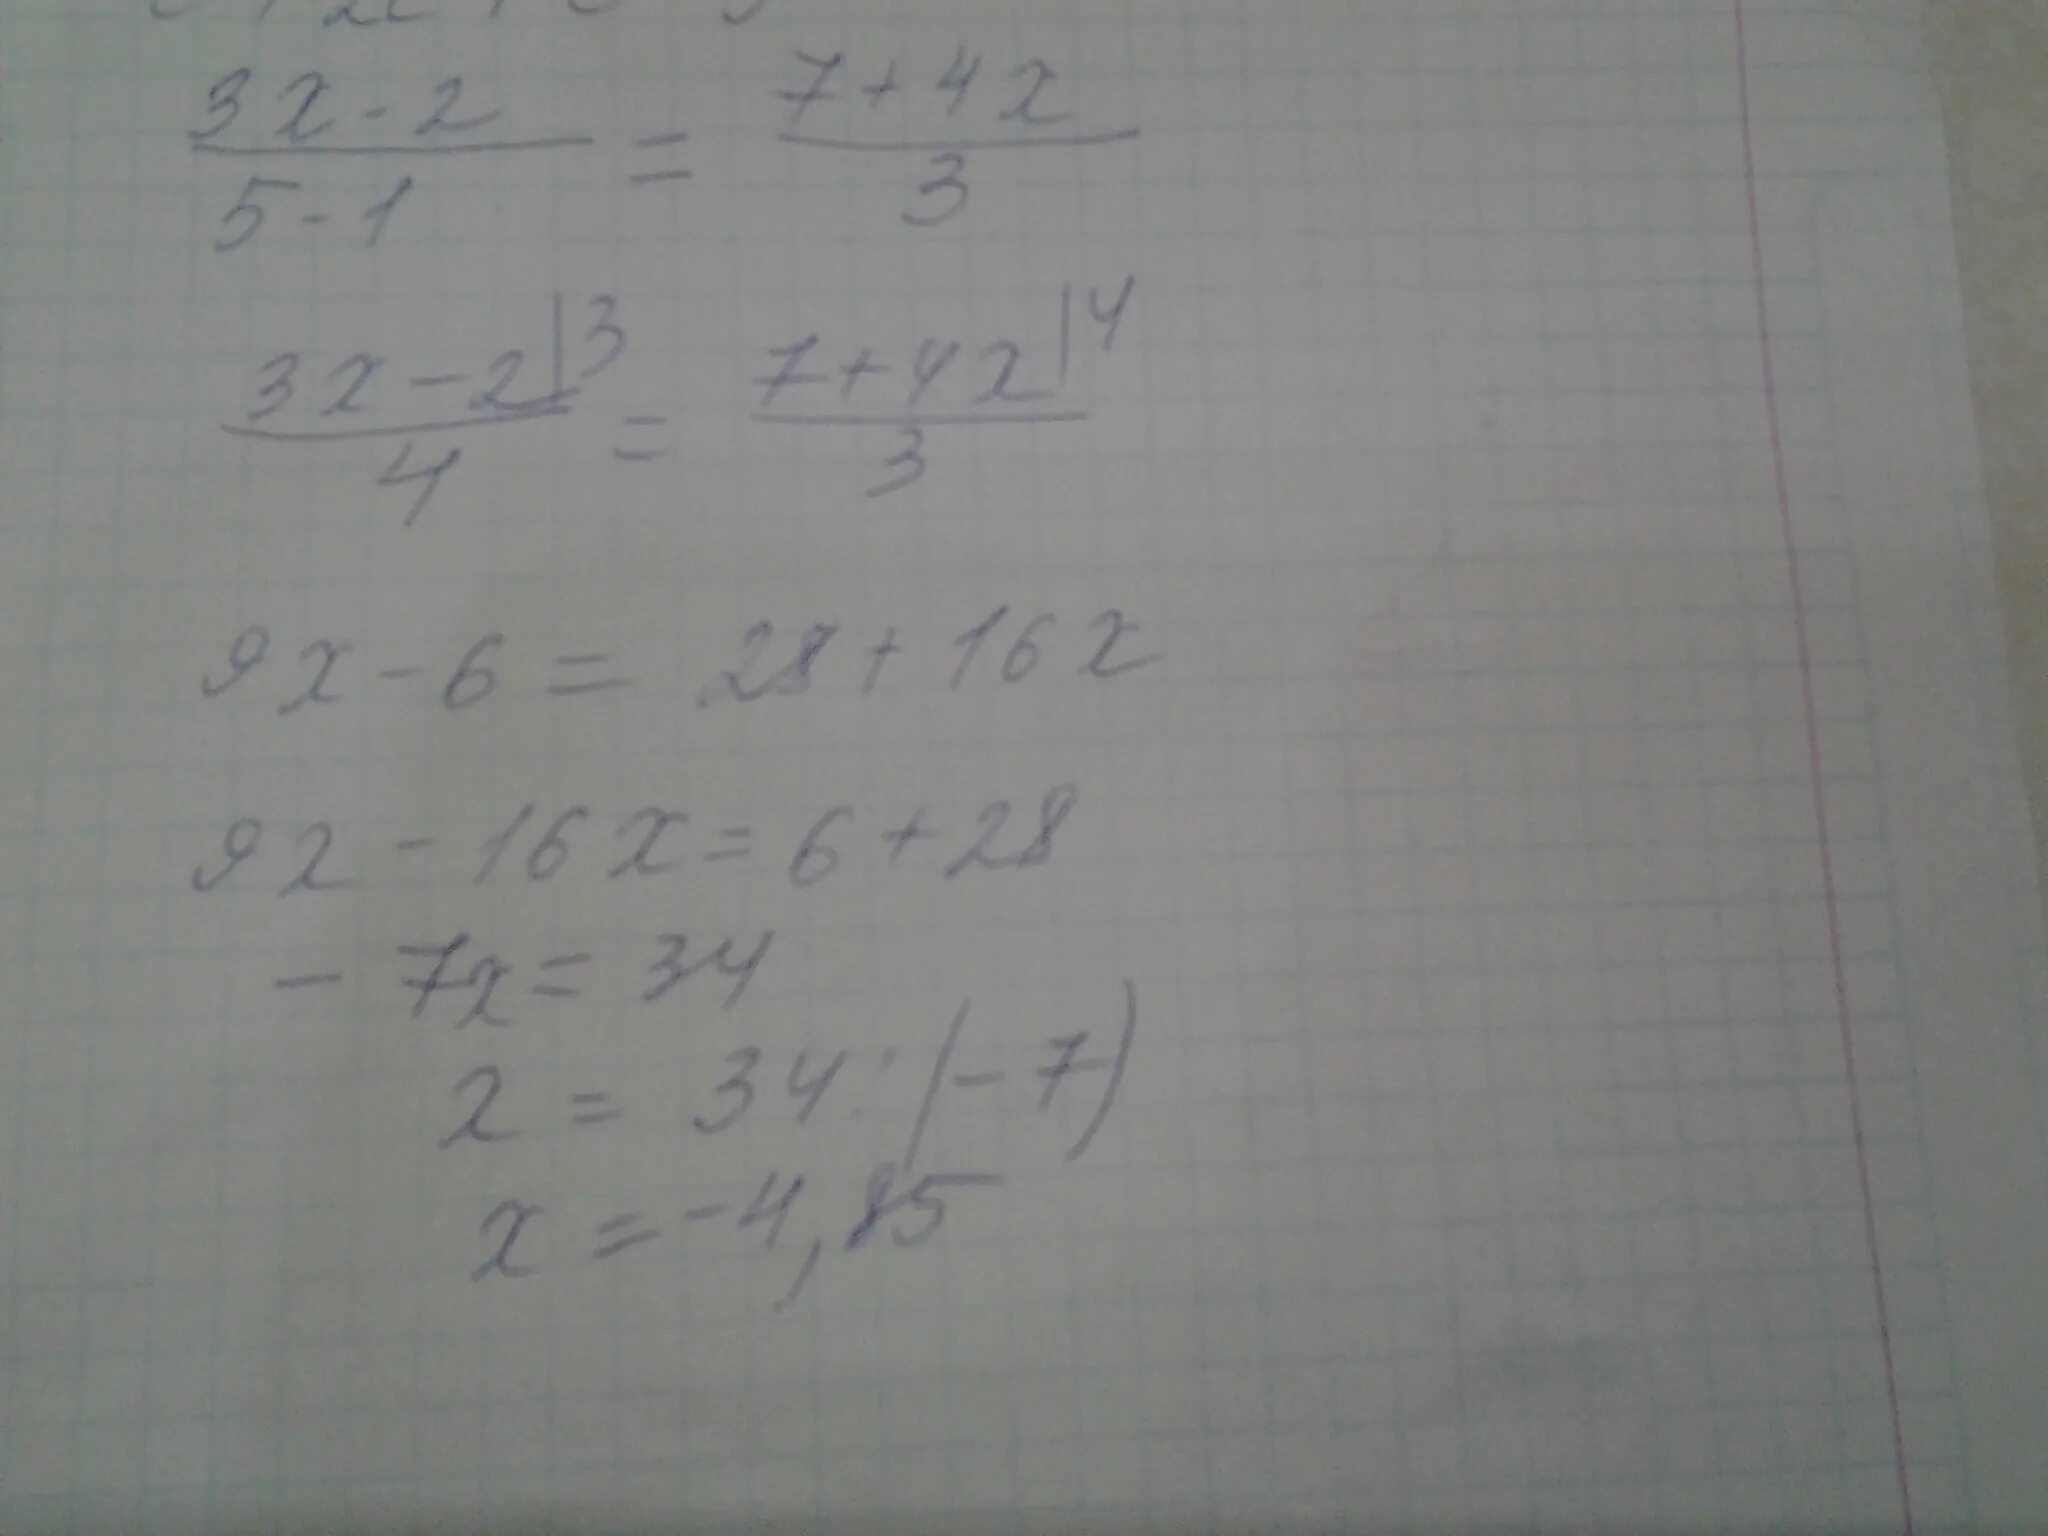 3 72 2 дробь 5. 3x-2дробь4 -хдробь3 =2. 5-3хдробь2х-3. 3x-1дробь6-xдробь3=5-xдробь9. Решить уравнение 3-хдробь3=х+1дробь2-5хдробь4.